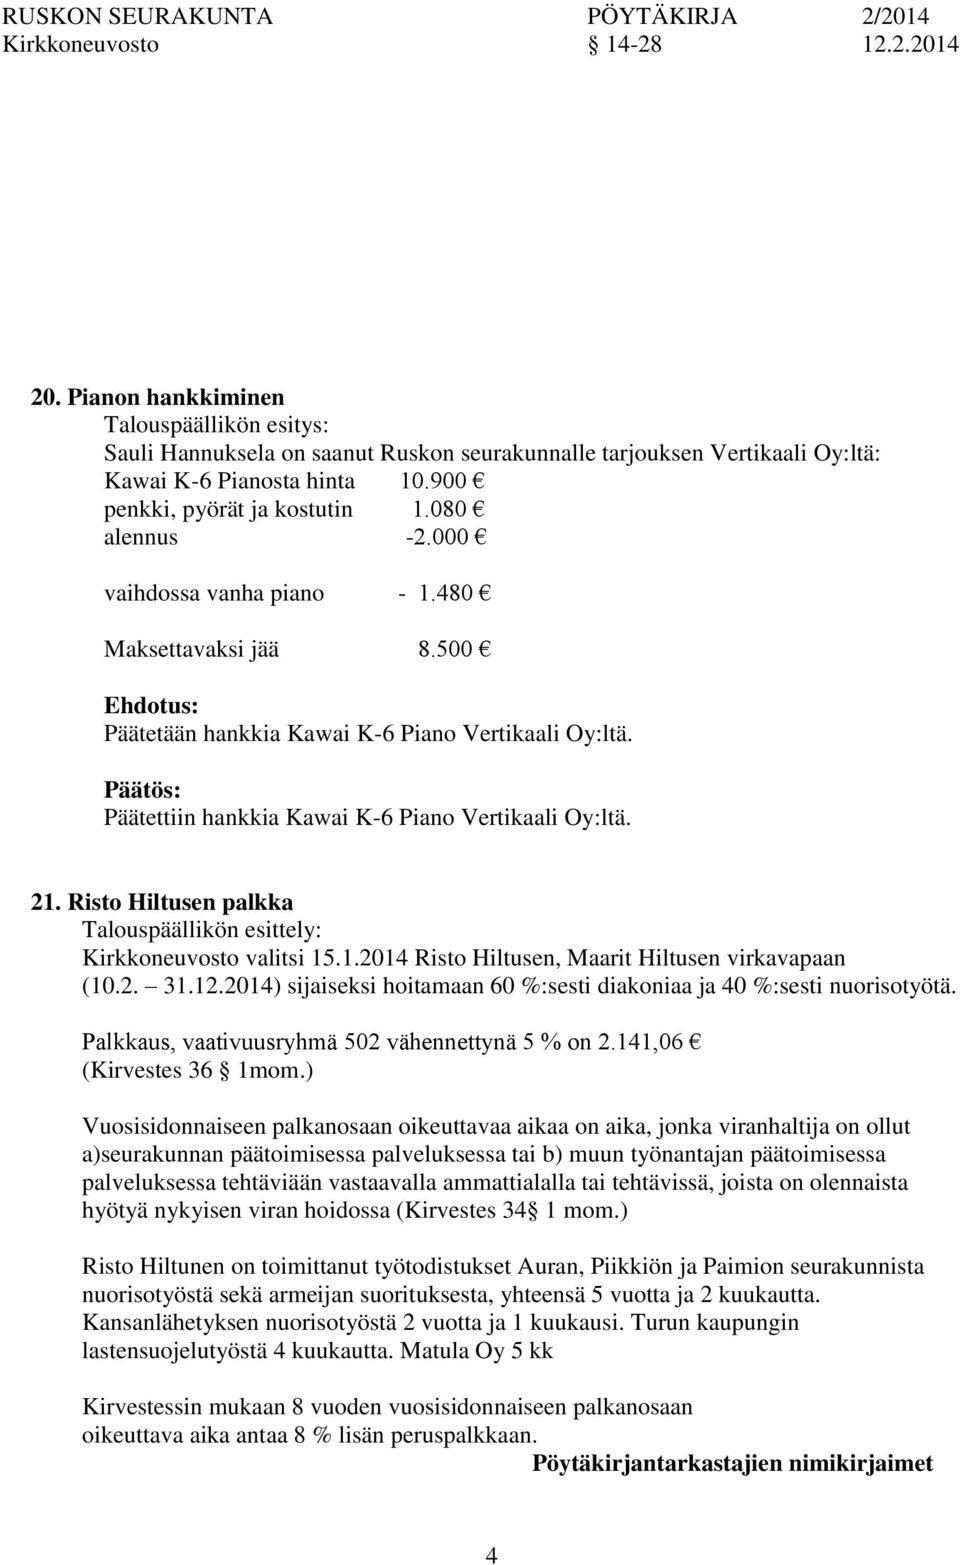 Päätettiin hankkia Kawai K-6 Piano Vertikaali Oy:ltä. 21. Risto Hiltusen palkka Talouspäällikön esittely: Kirkkeuvosto valitsi 15.1.2014 Risto Hiltusen, Maarit Hiltusen virkavapaan (10.2. 31.12.